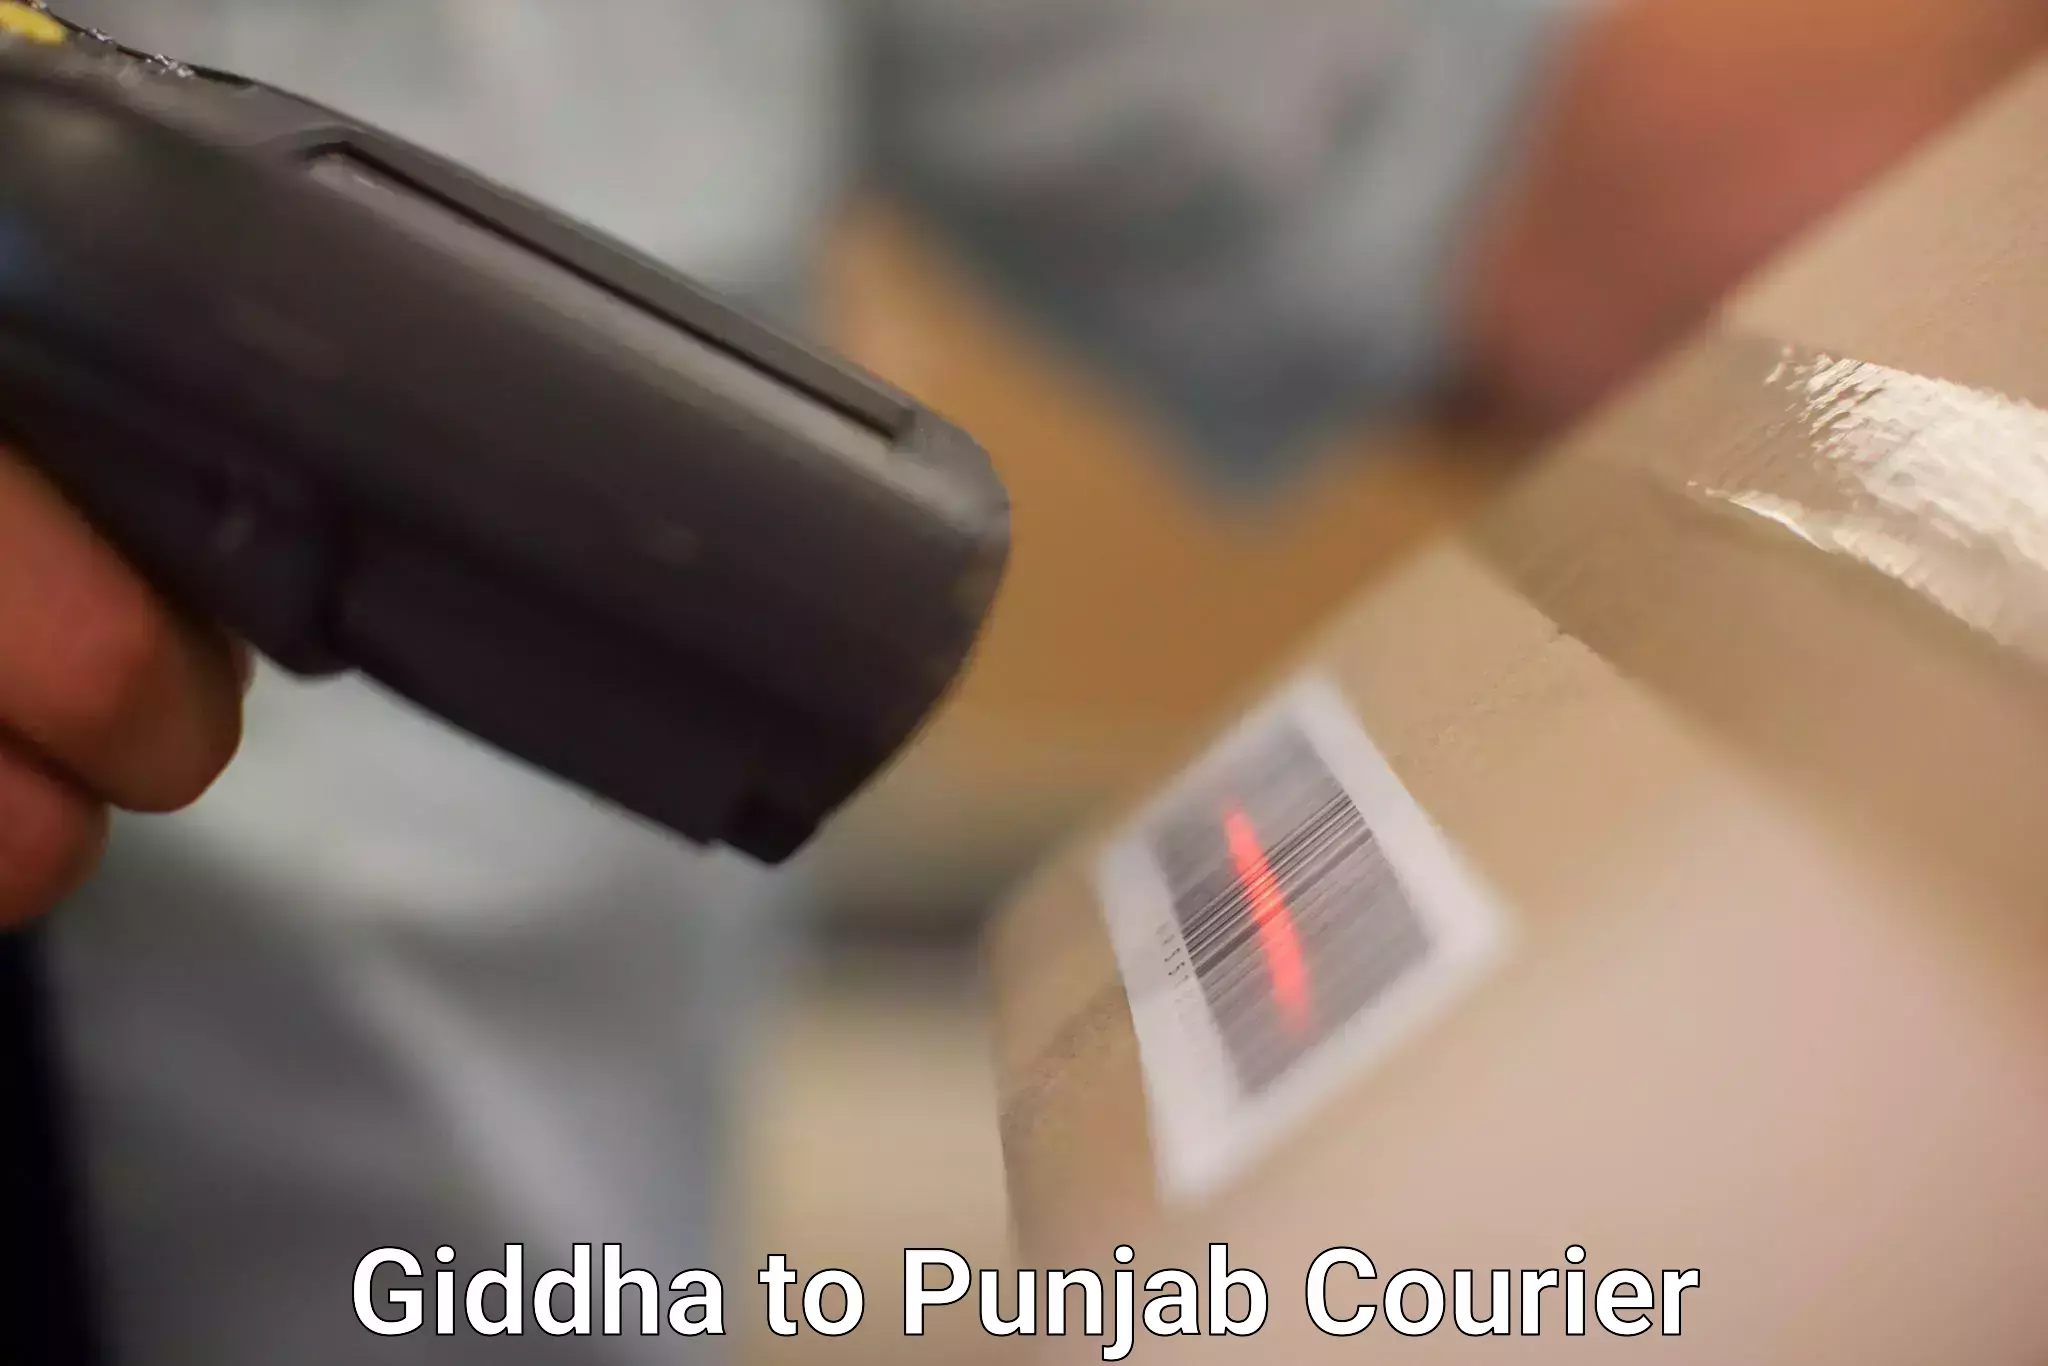 Global delivery options Giddha to Punjab